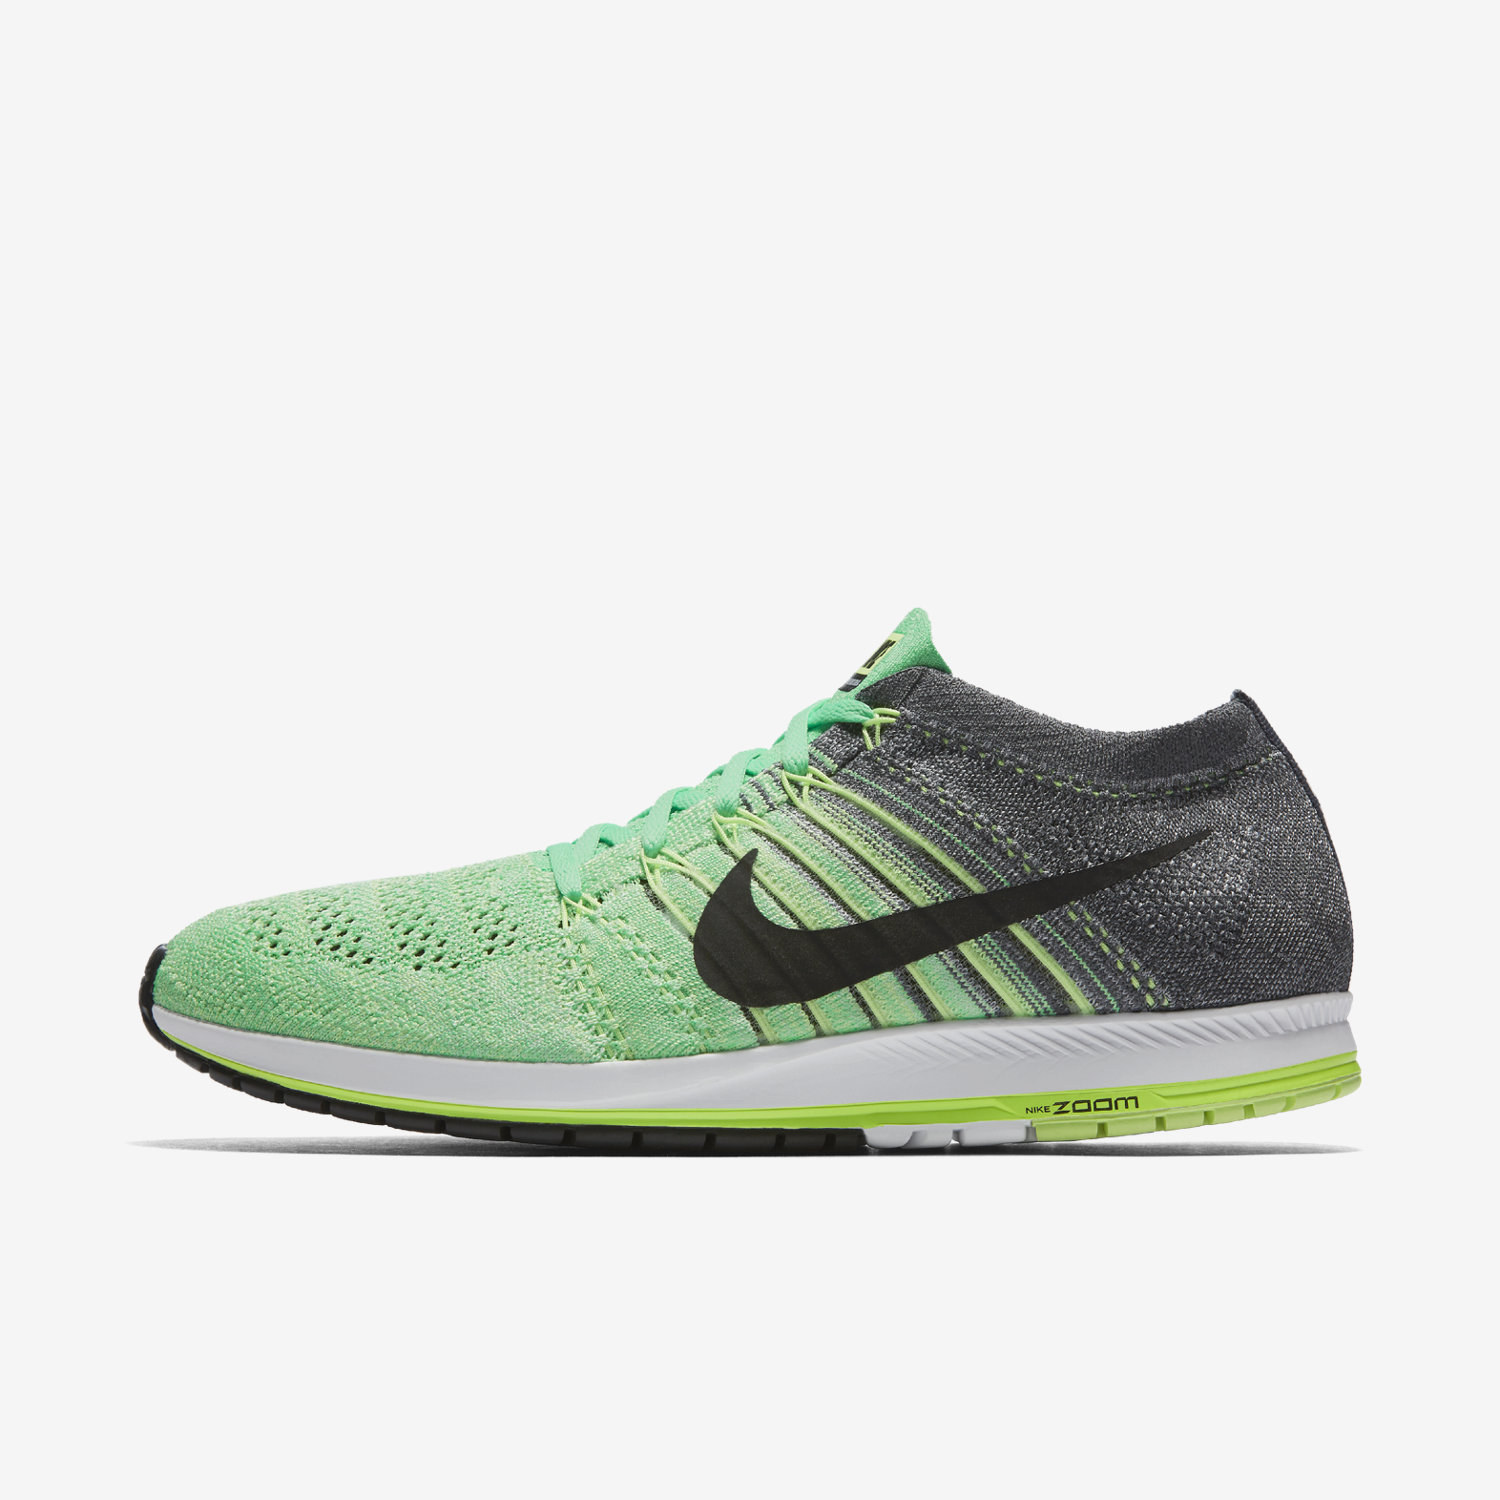 αθλητικα για τρεξιμο γυναικεια Nike Zoom Flyknit Streak πρασινο/βαθυ γκρι/πρασινο/μαυρα 17289428FC